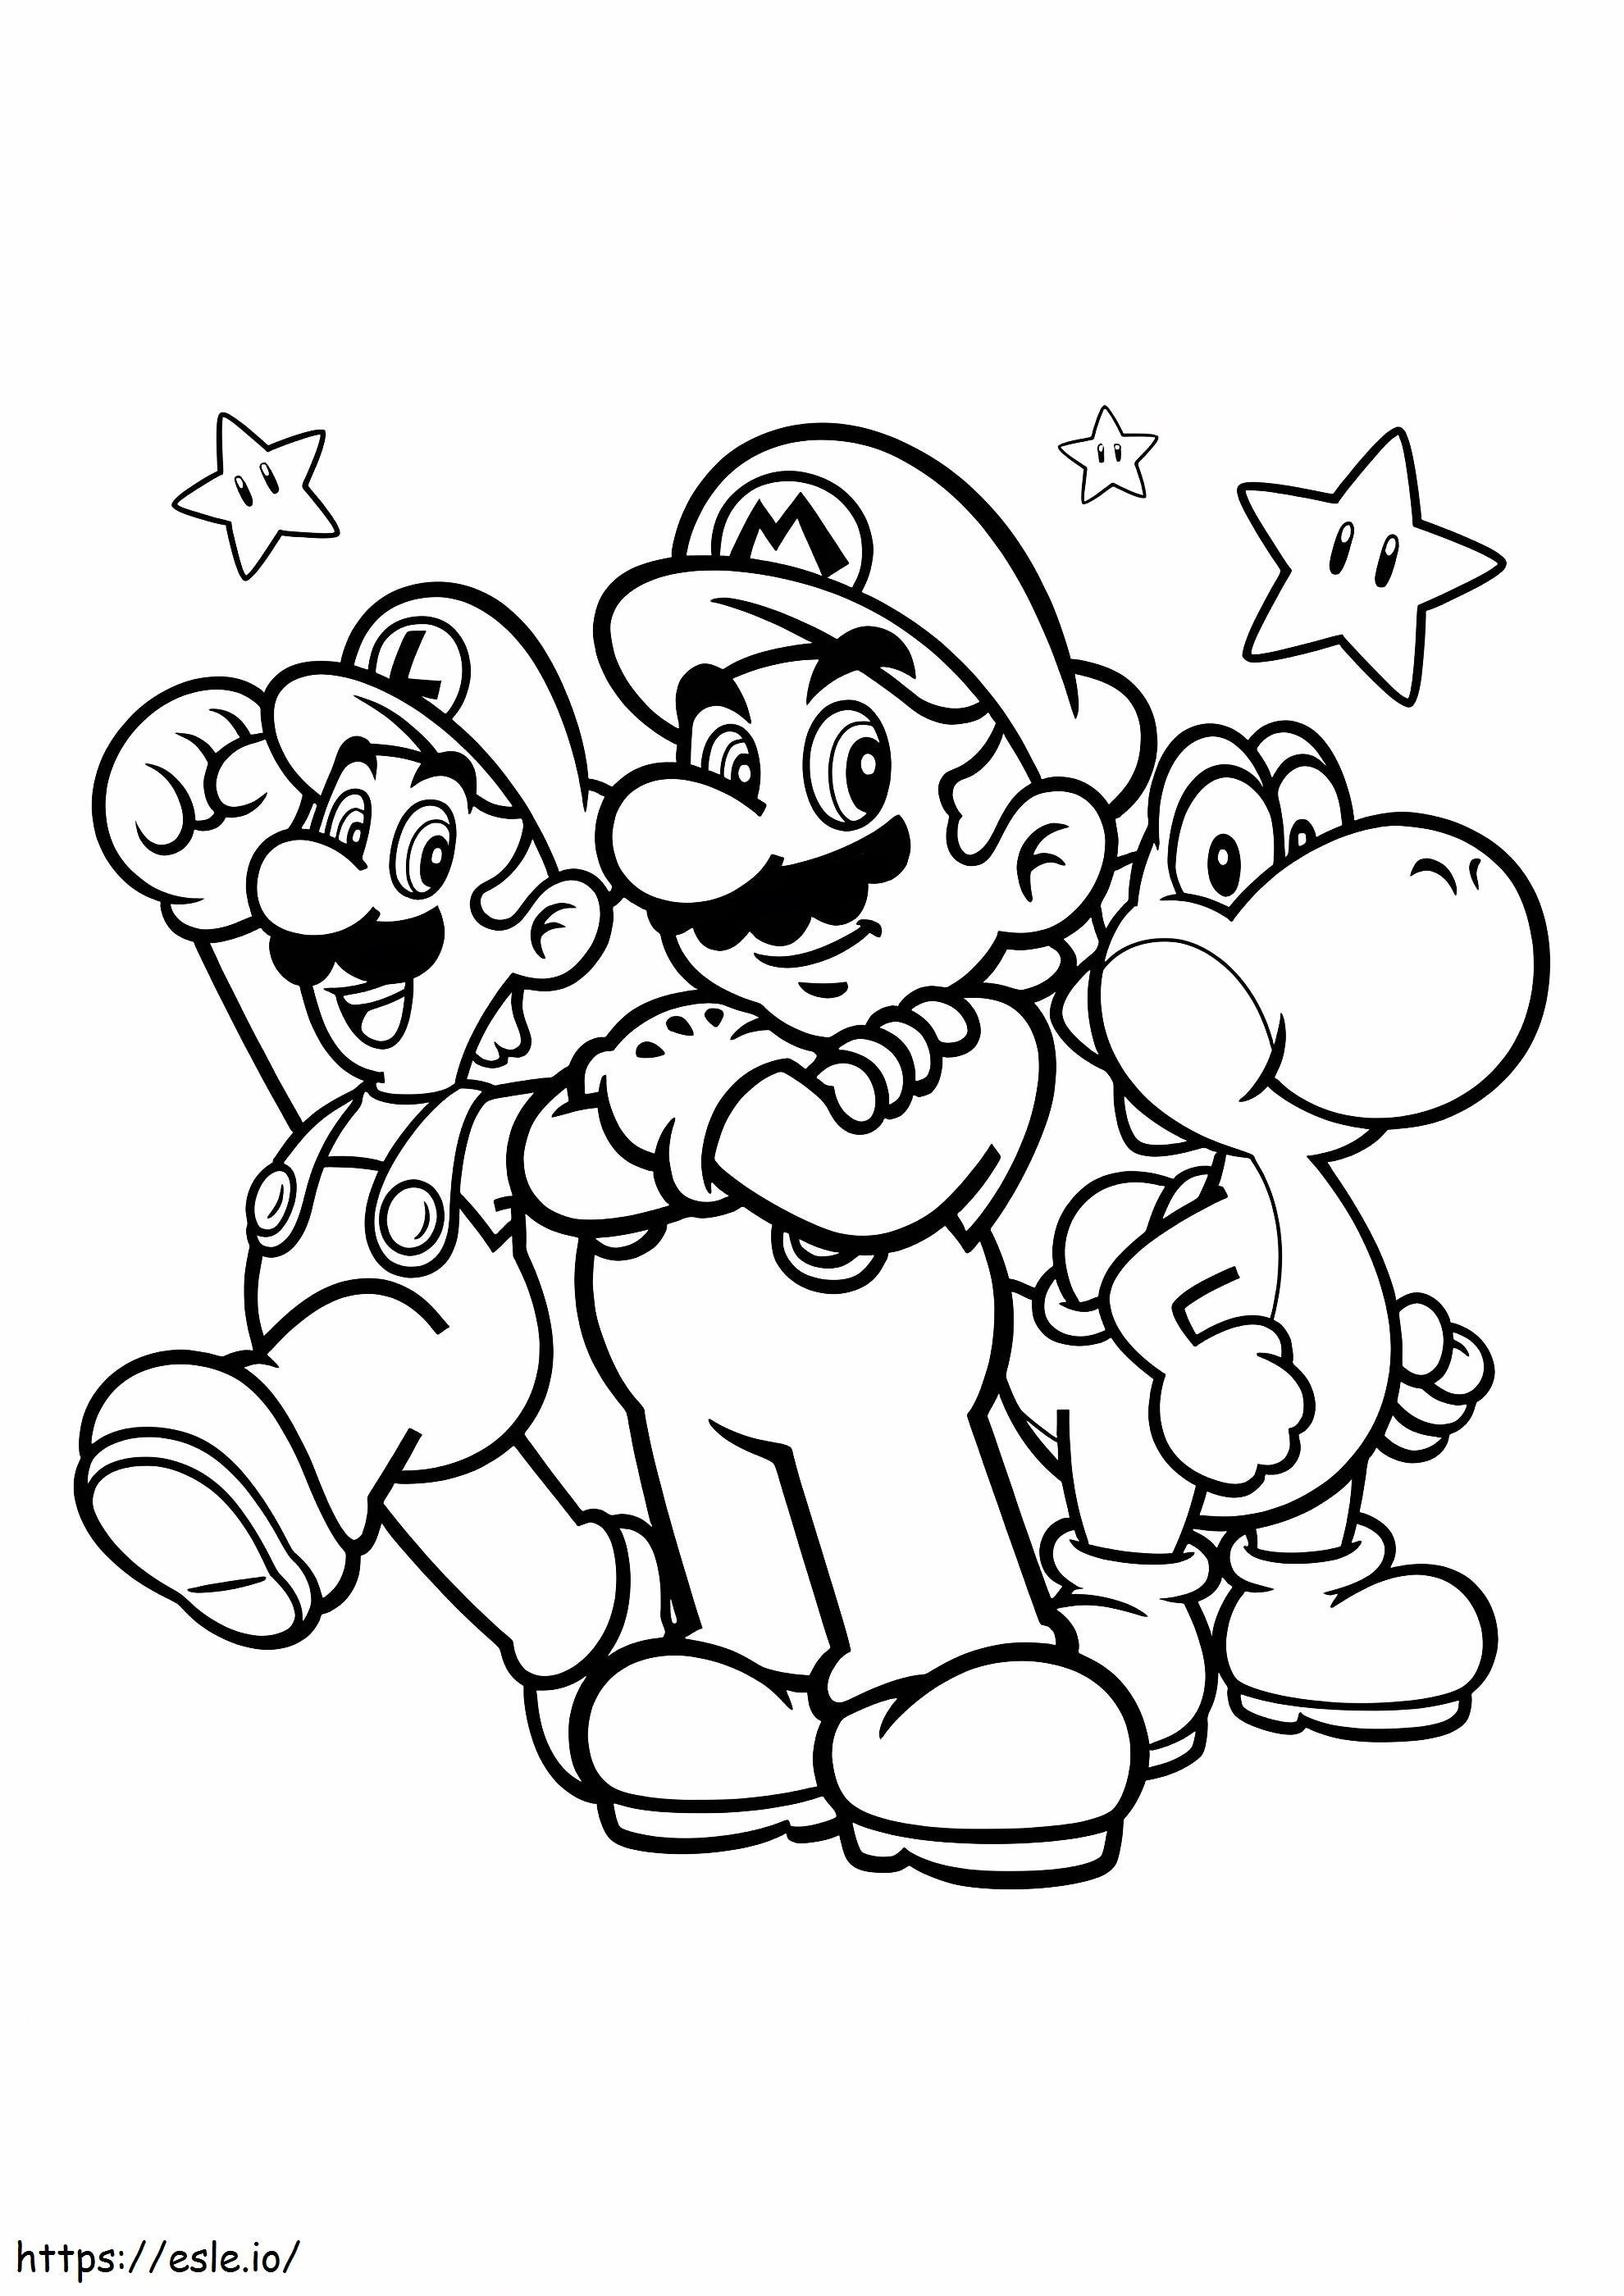 Luigi e gli amici da colorare